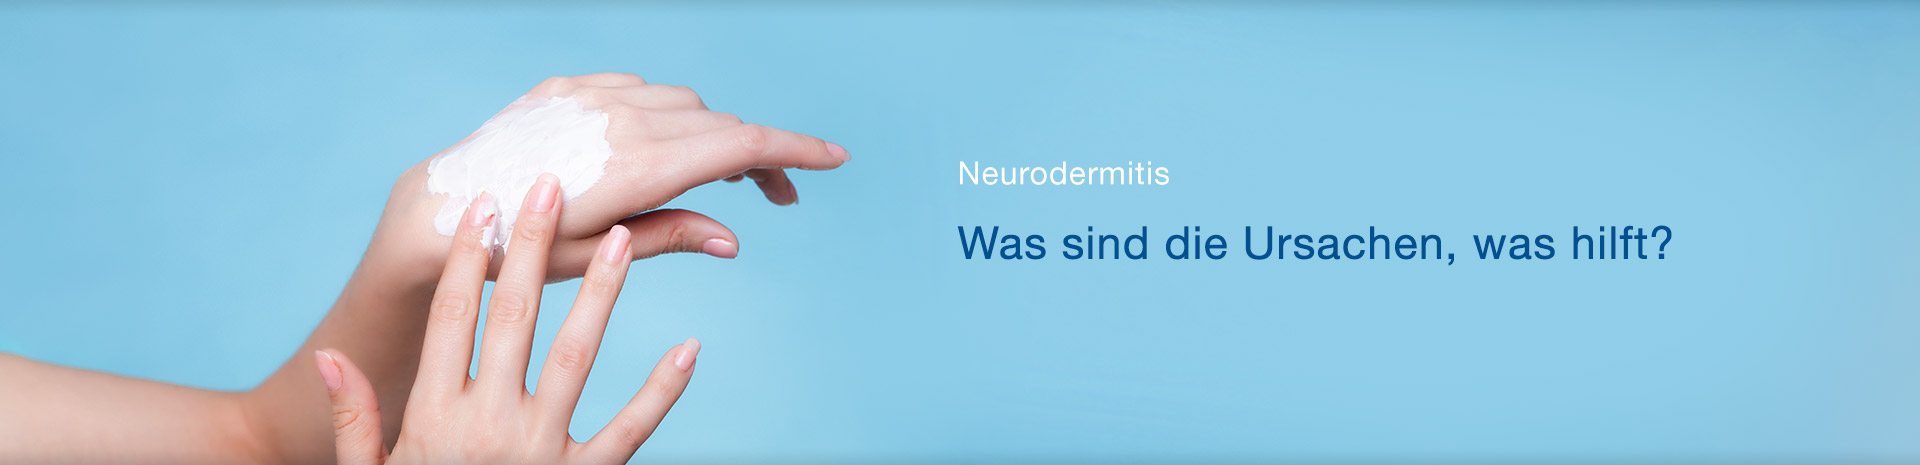 Neurodermitis – Ursachen, Symptome und Behandlung